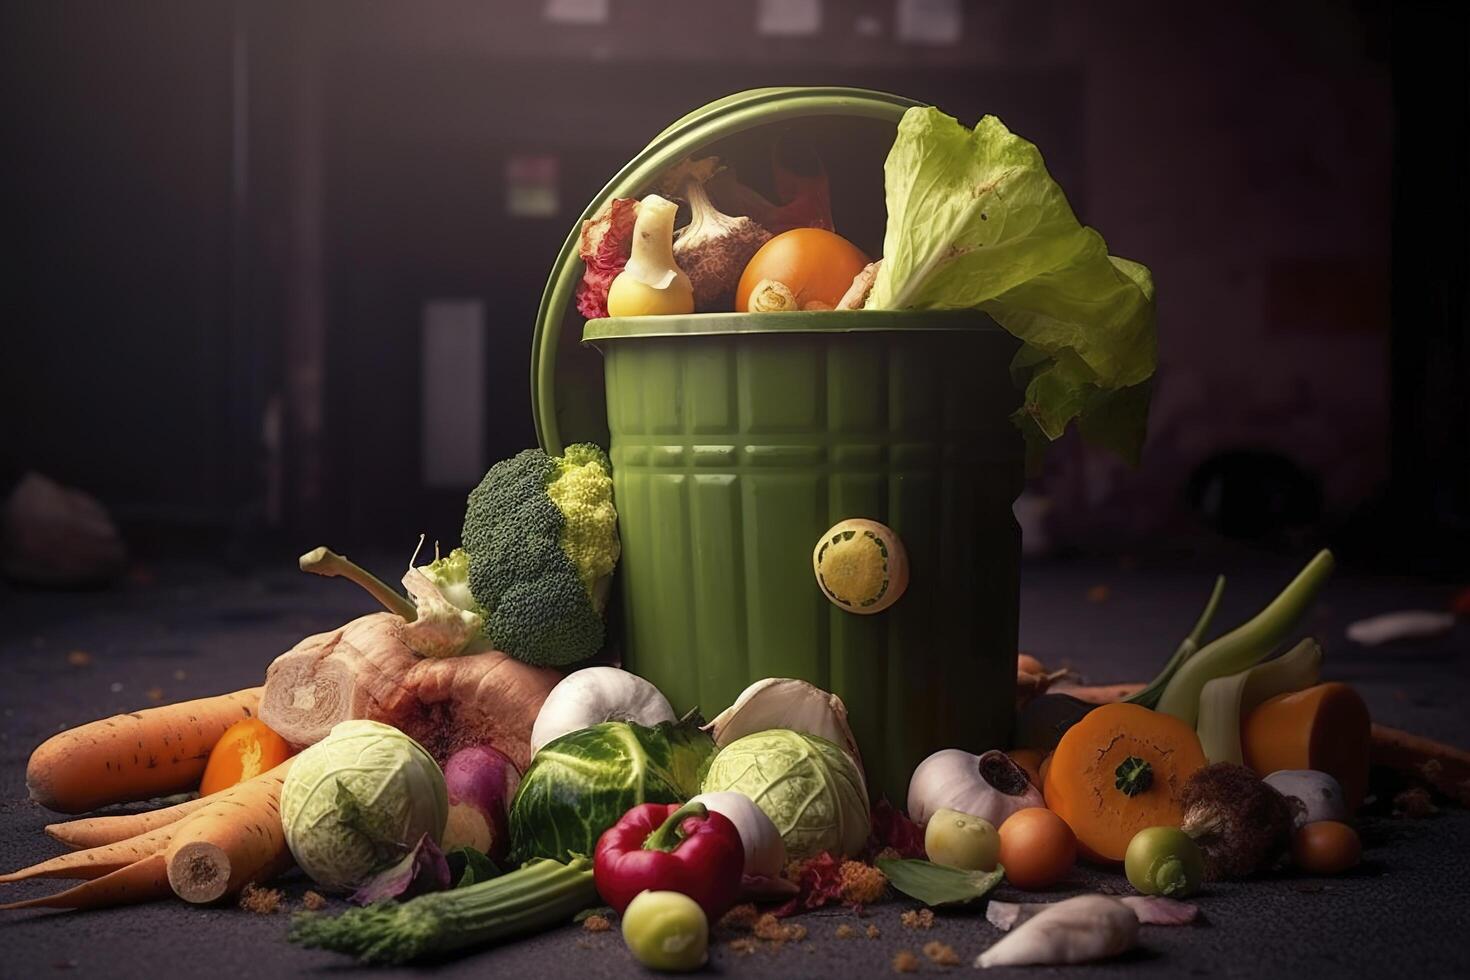 niet opgegeten ongebruikt verwend groenten gegooid in de uitschot container. voedsel verlies en voedsel afval. verminderen verspild voedsel, composteren, verrot groenten in een afval. ai gegenereerd. foto